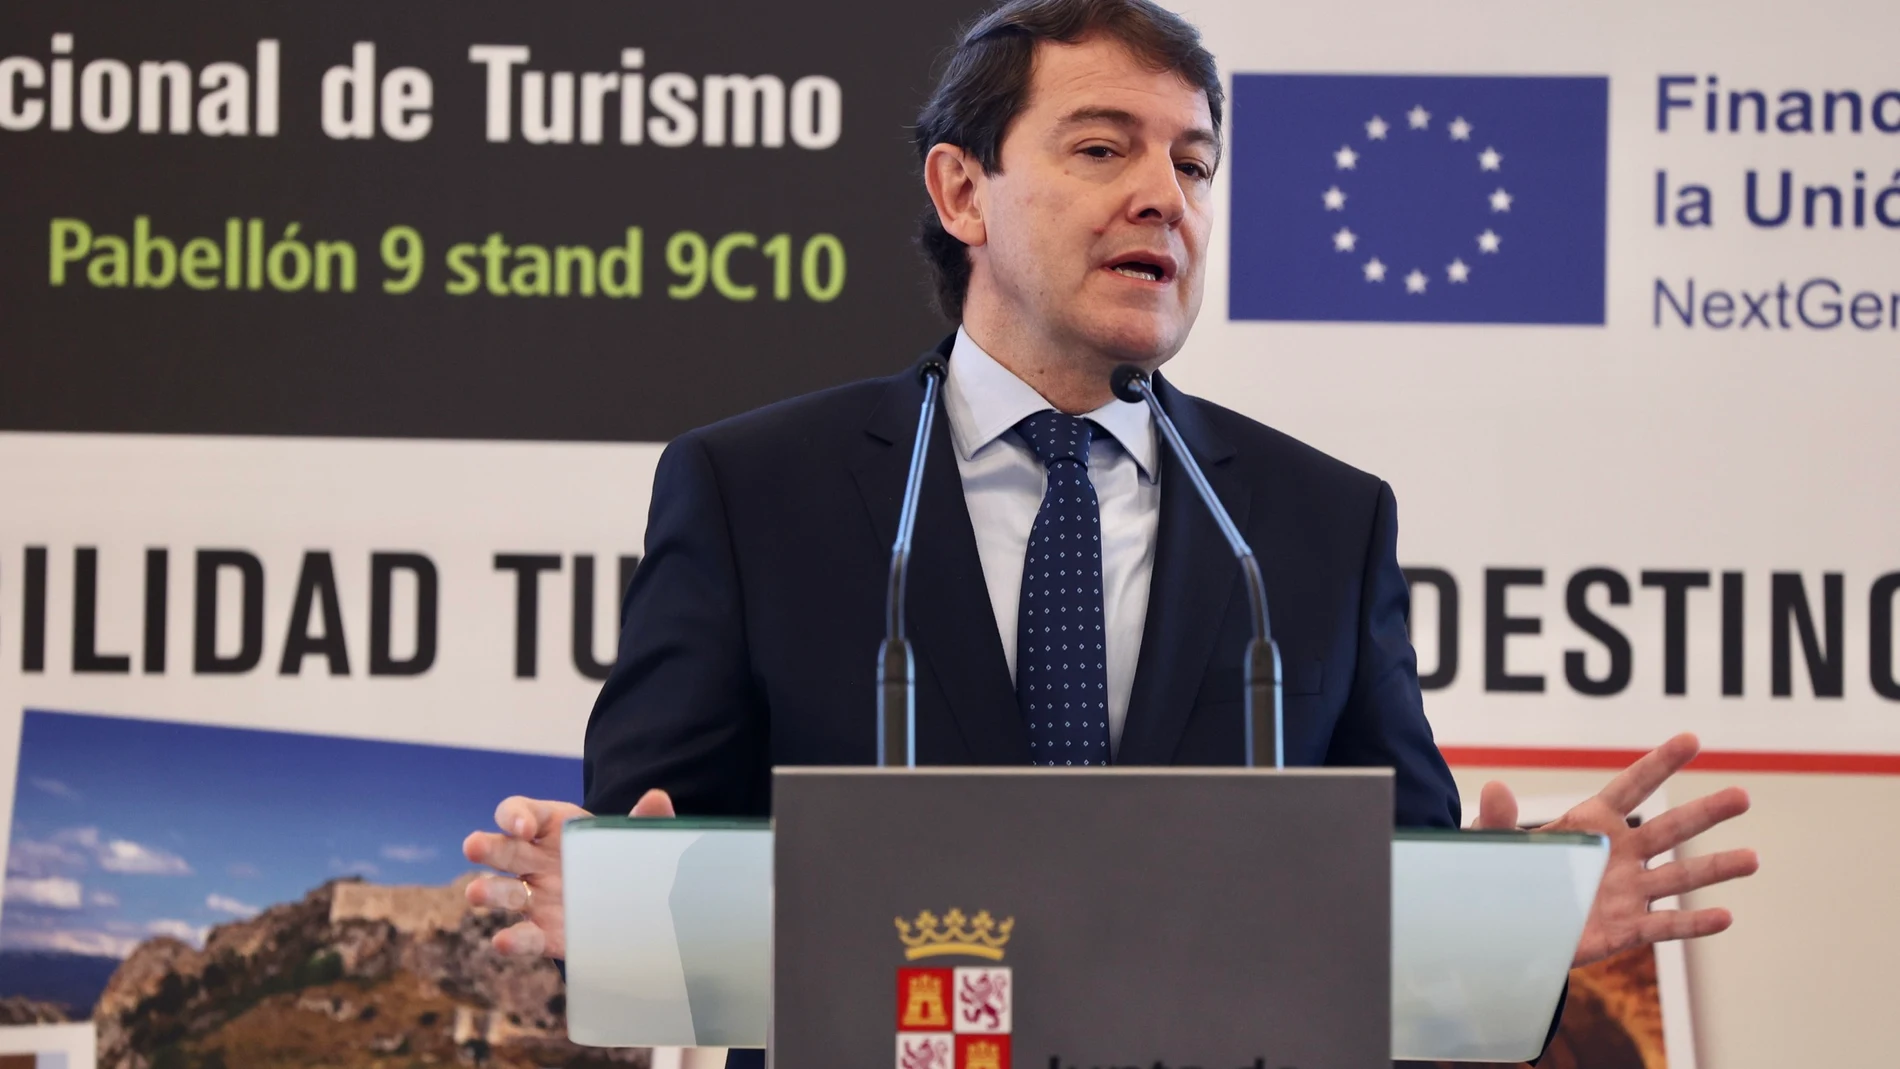 El presidente de la Junta de Castilla y León, Alfonso Fernández Mañueco, mantiene un encuentro con responsables municipales sobre los Planes de Sostenibilidad Turística en destinos de Castilla y León